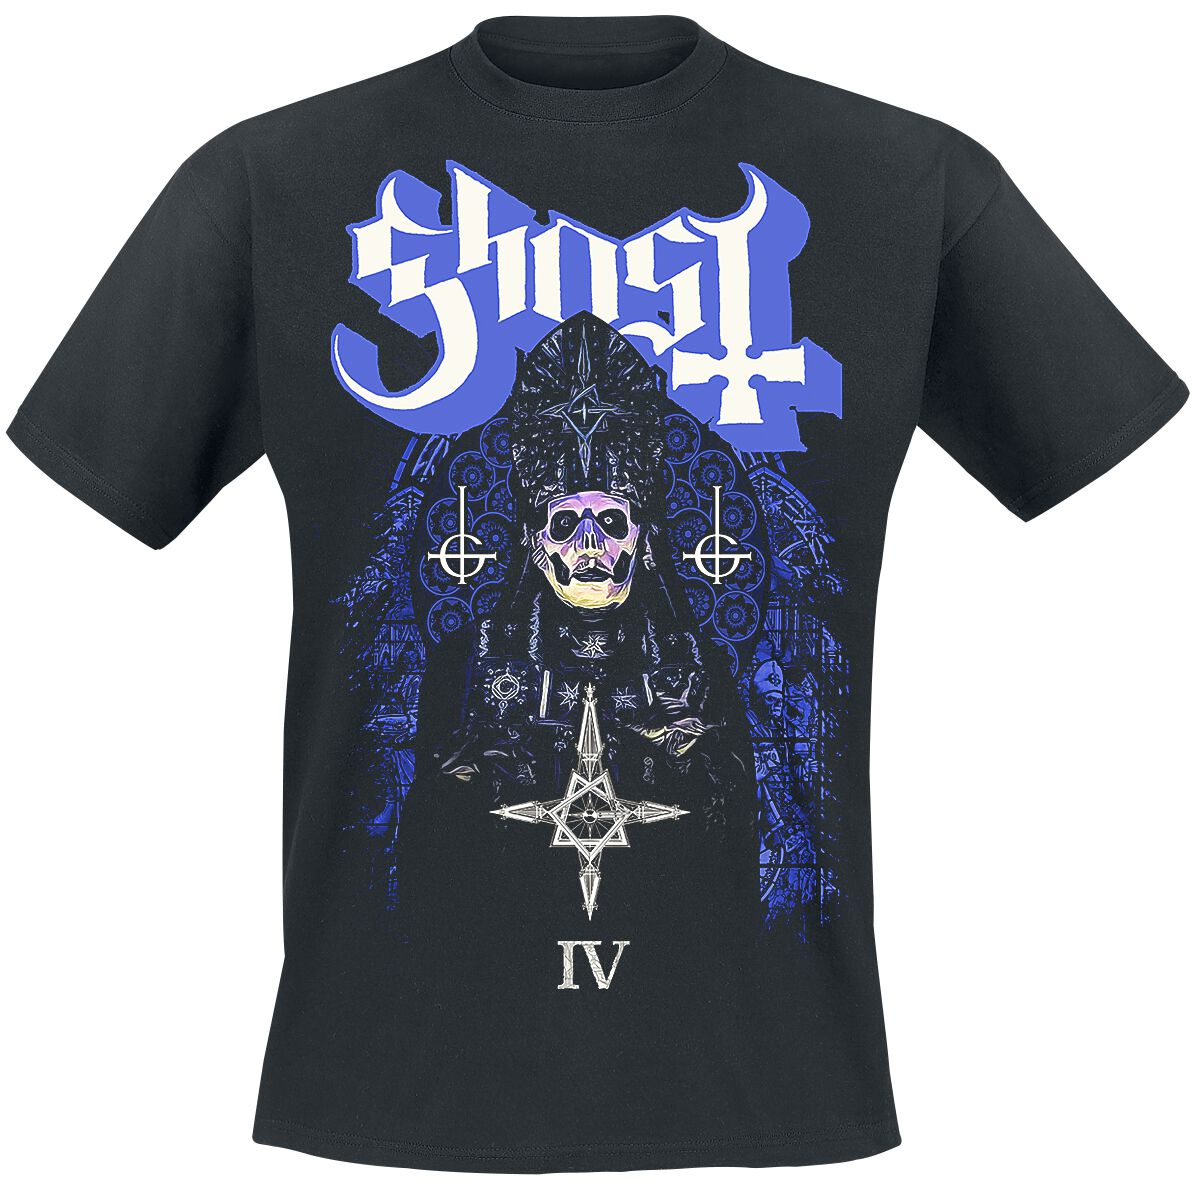 Ghost T-Shirt - Stained Glass IV - S bis 4XL - für Männer - Größe XL - schwarz  - Lizenziertes Merchandise!